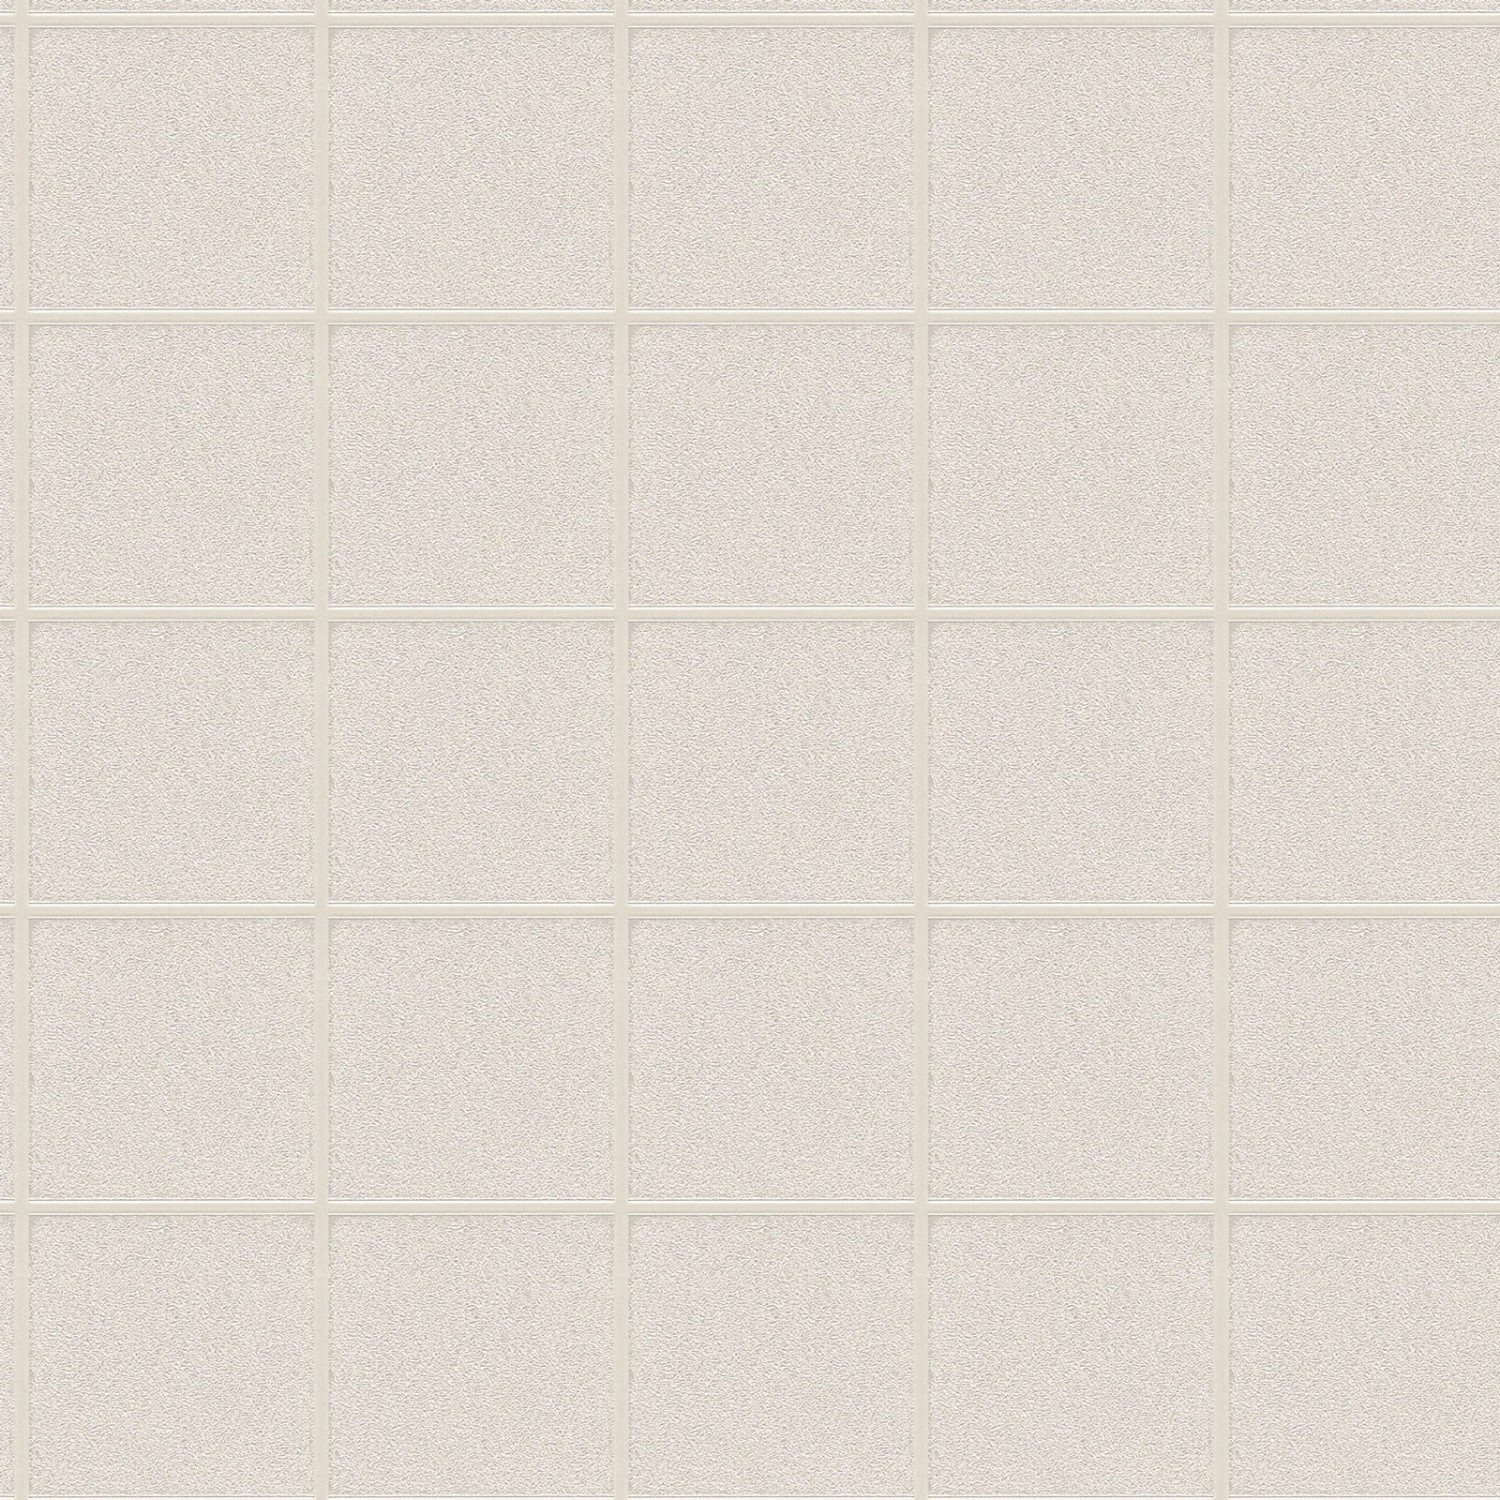 Bricoflor Hellgraue Tapete in Kacheloptik Fliesen Tapete aus Vlies und Viny günstig online kaufen